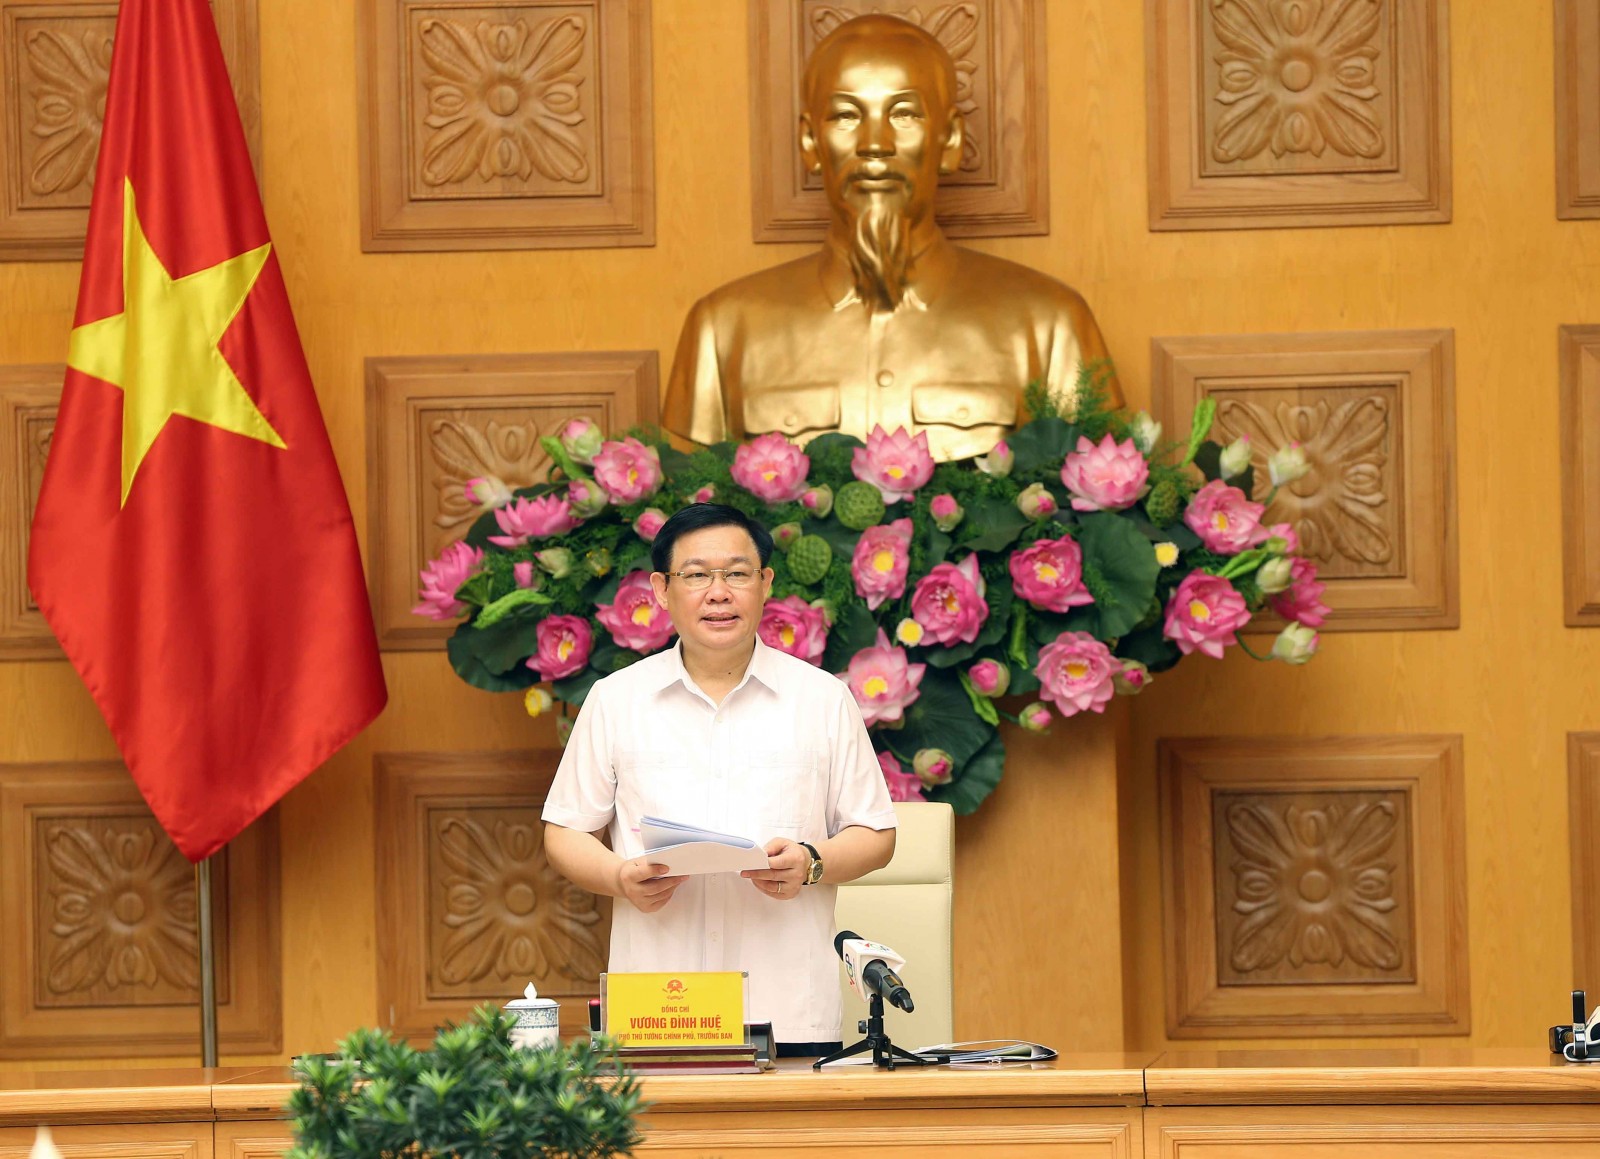 Phó Thủ tướng Vương Đình Huệ phát biểu tại phiên họp - Ảnh: VGP/Thành Chung